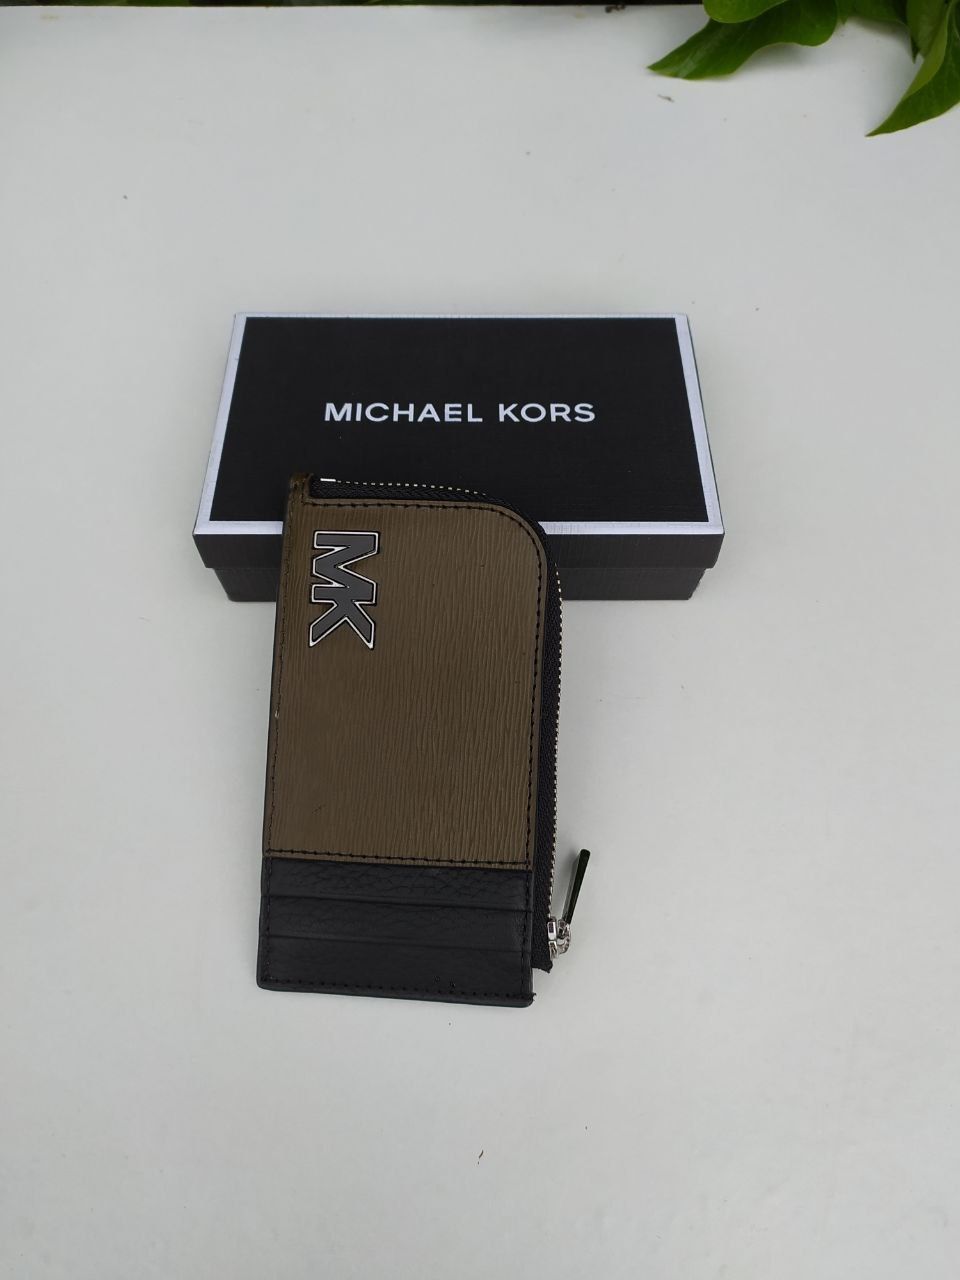 Michael kors мужской кошелек, портмоне. Оригинал